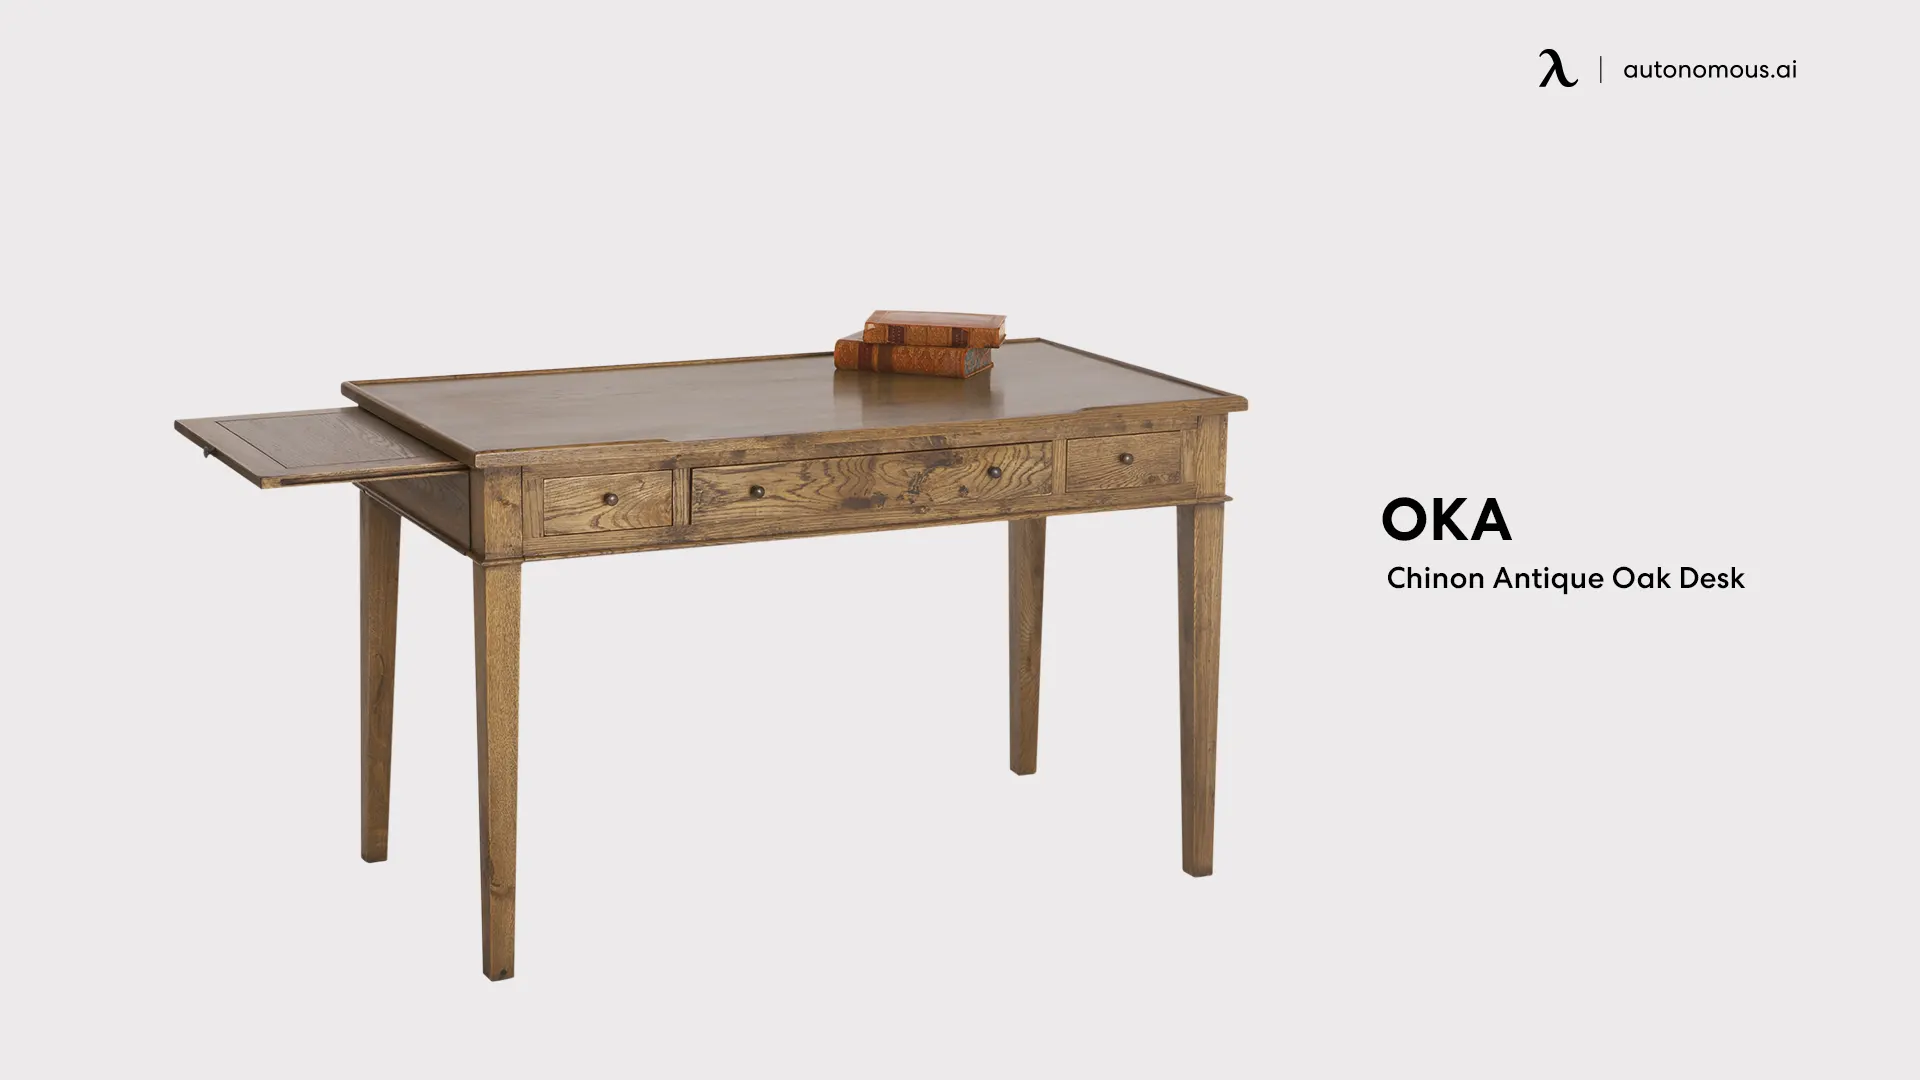 Chinon Antique Oak Desk by OKA cool desk